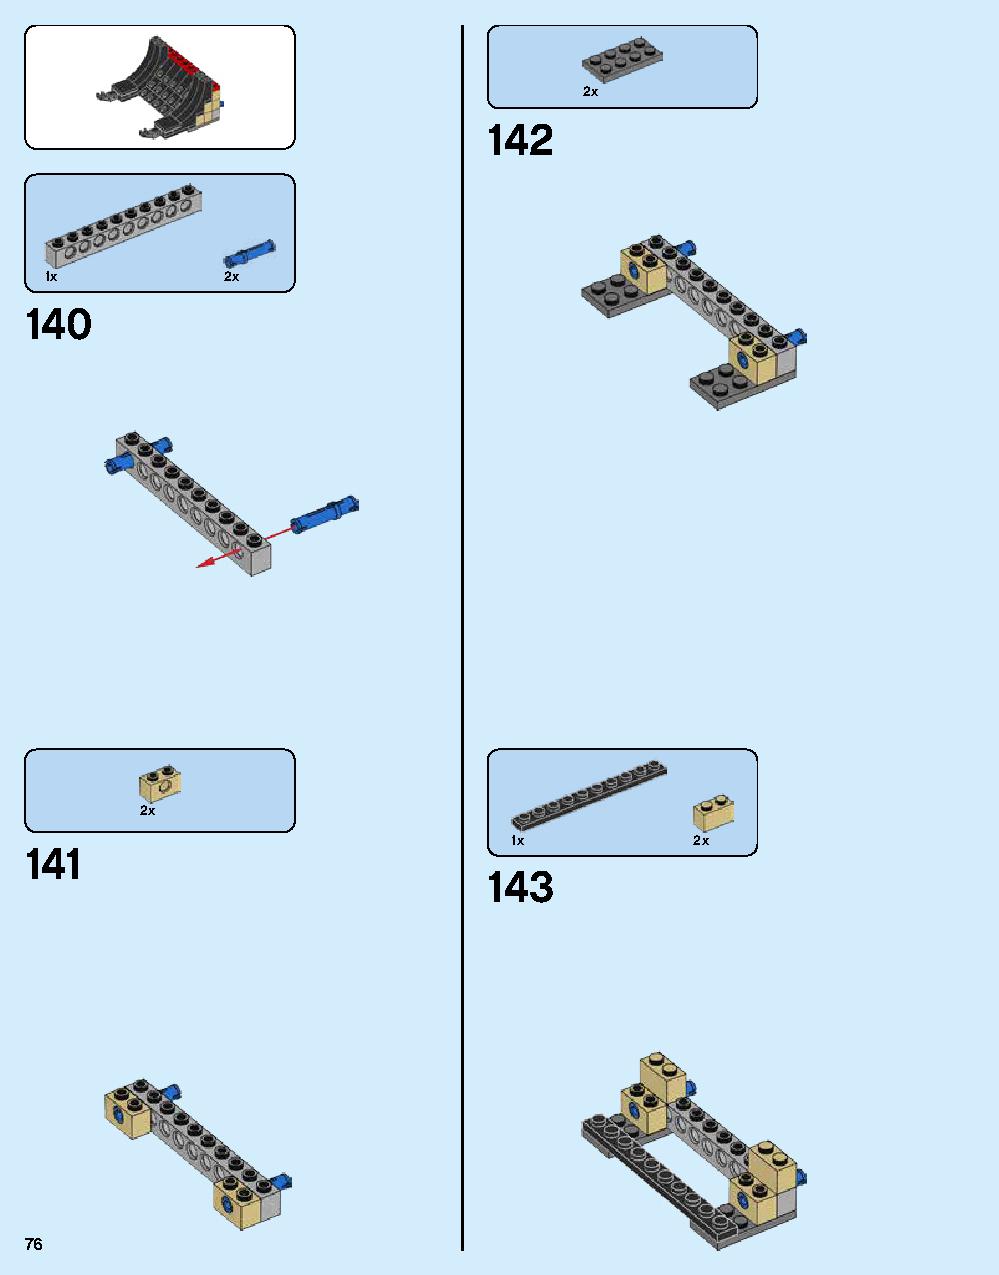 ニンジャゴー シティ 70620 レゴの商品情報 レゴの説明書・組立方法 76 page